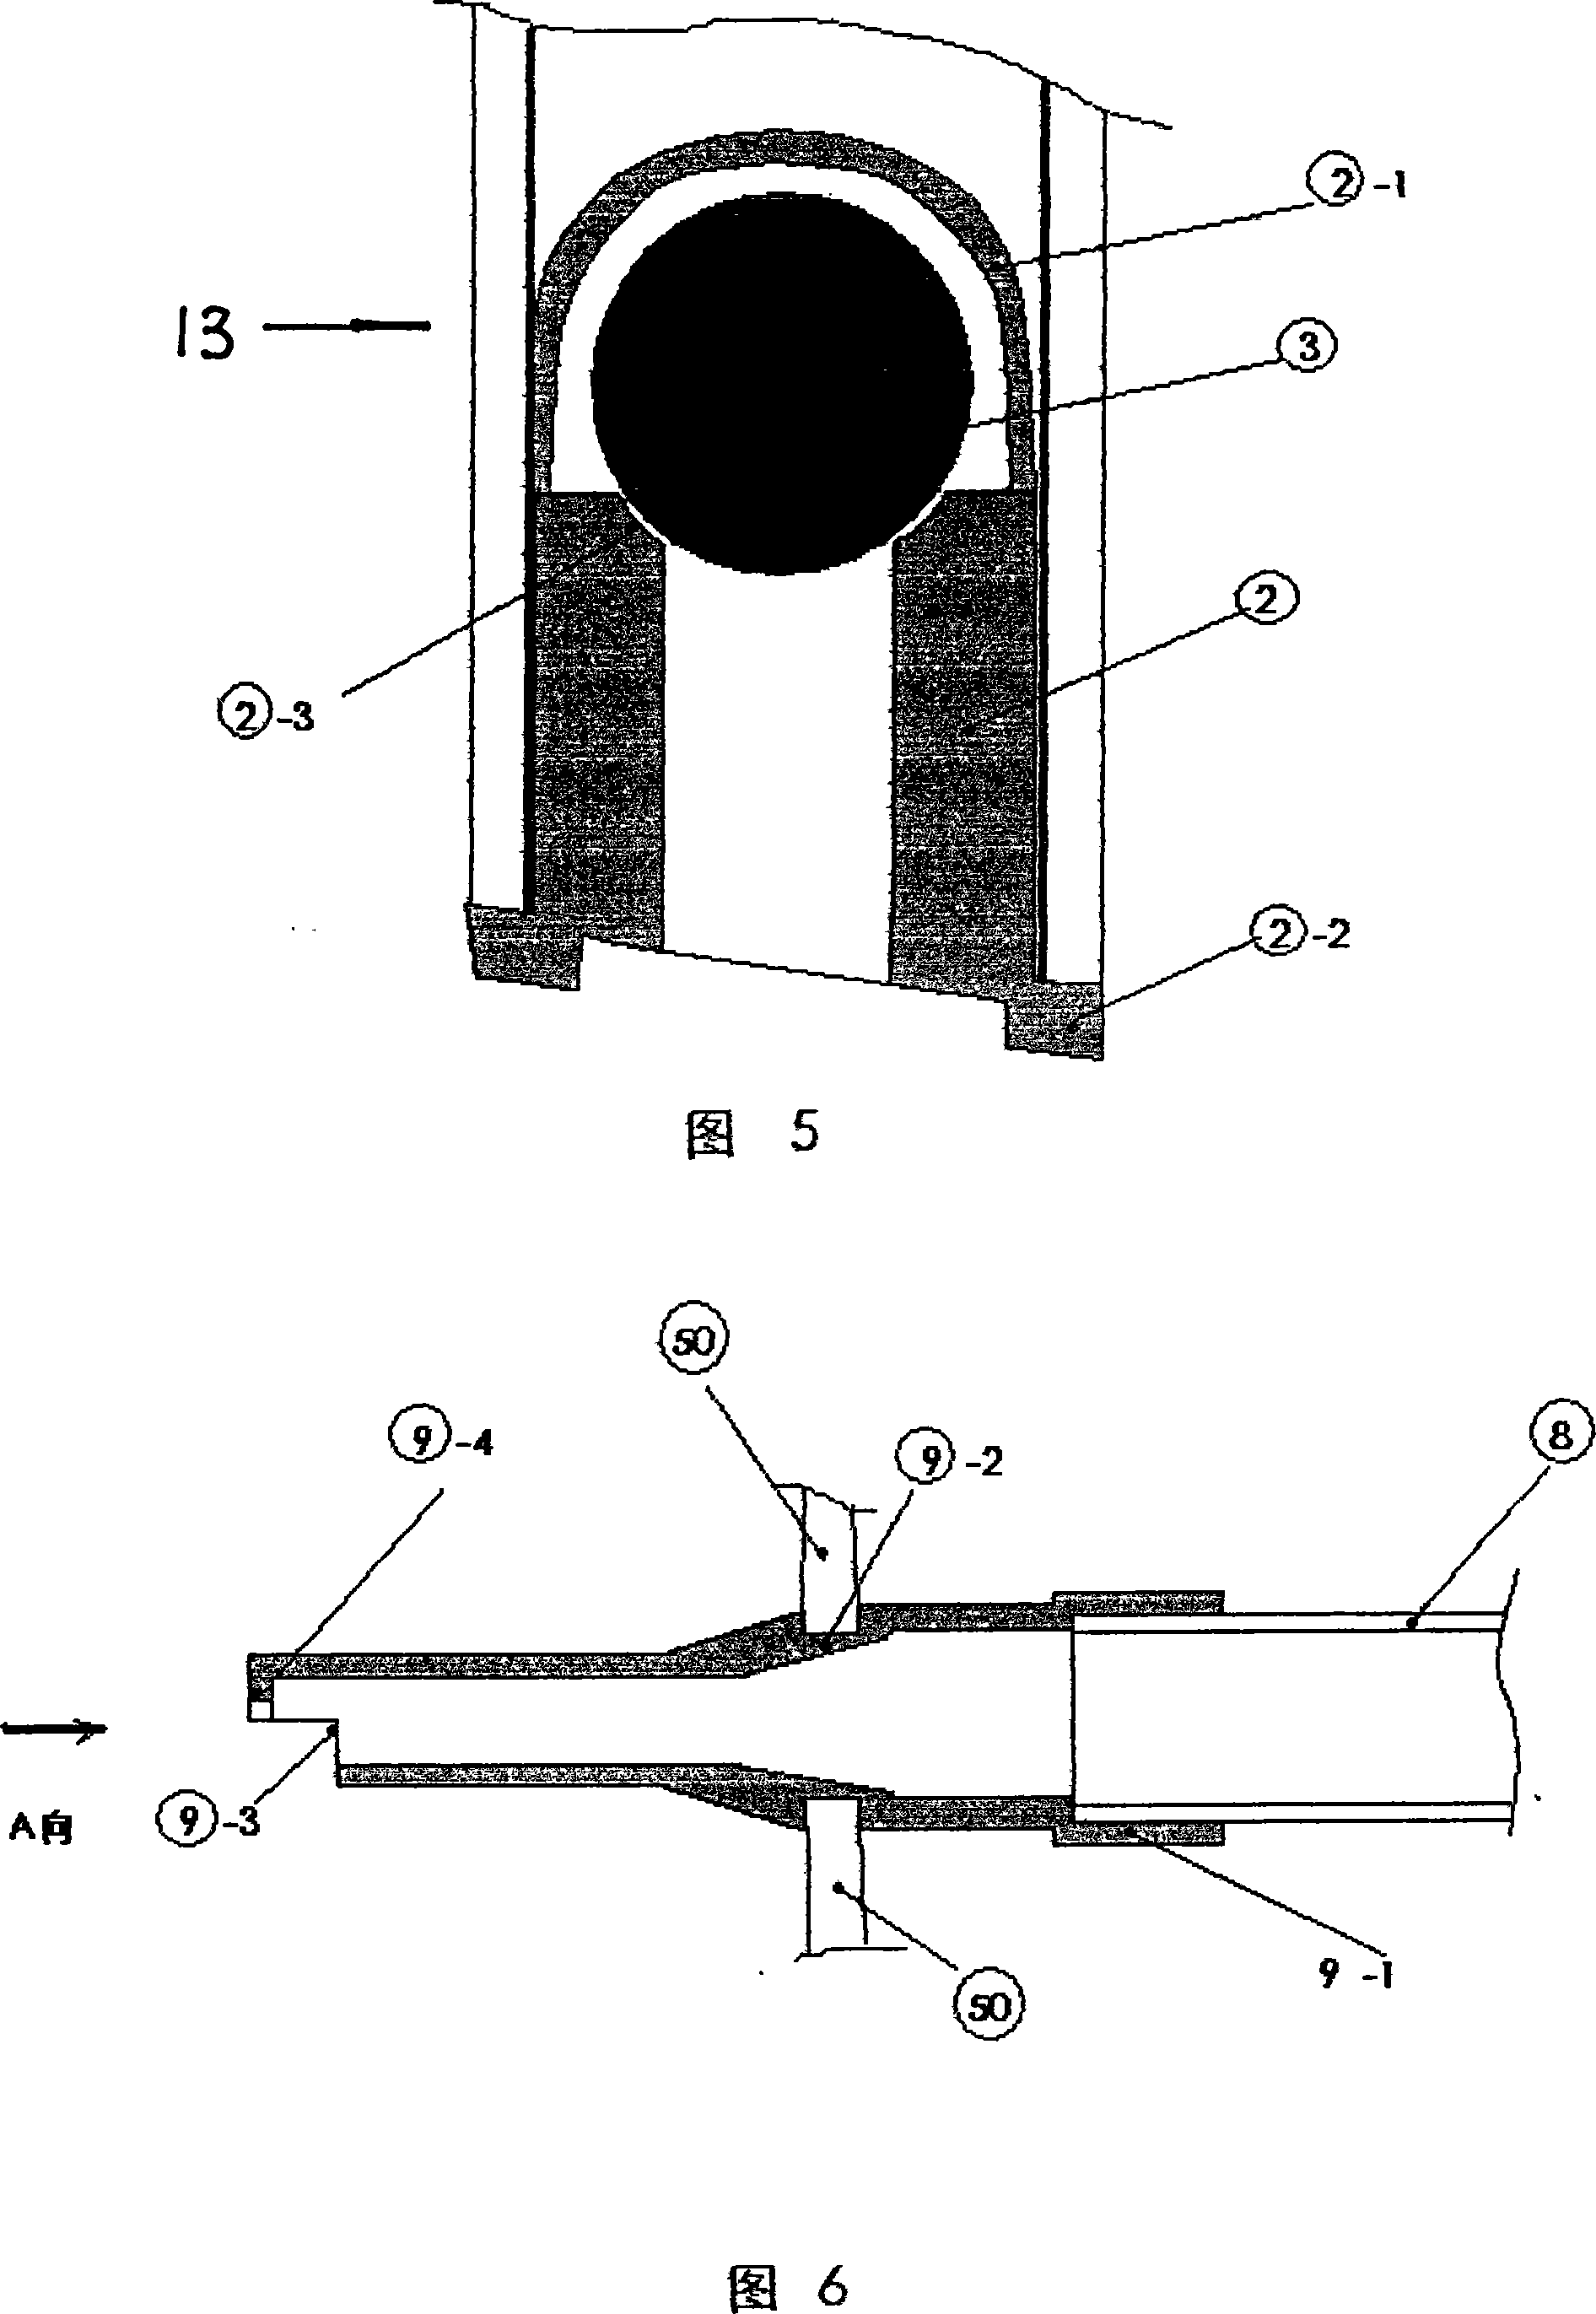 Water spraying mechanism of portable flushing toilet seat